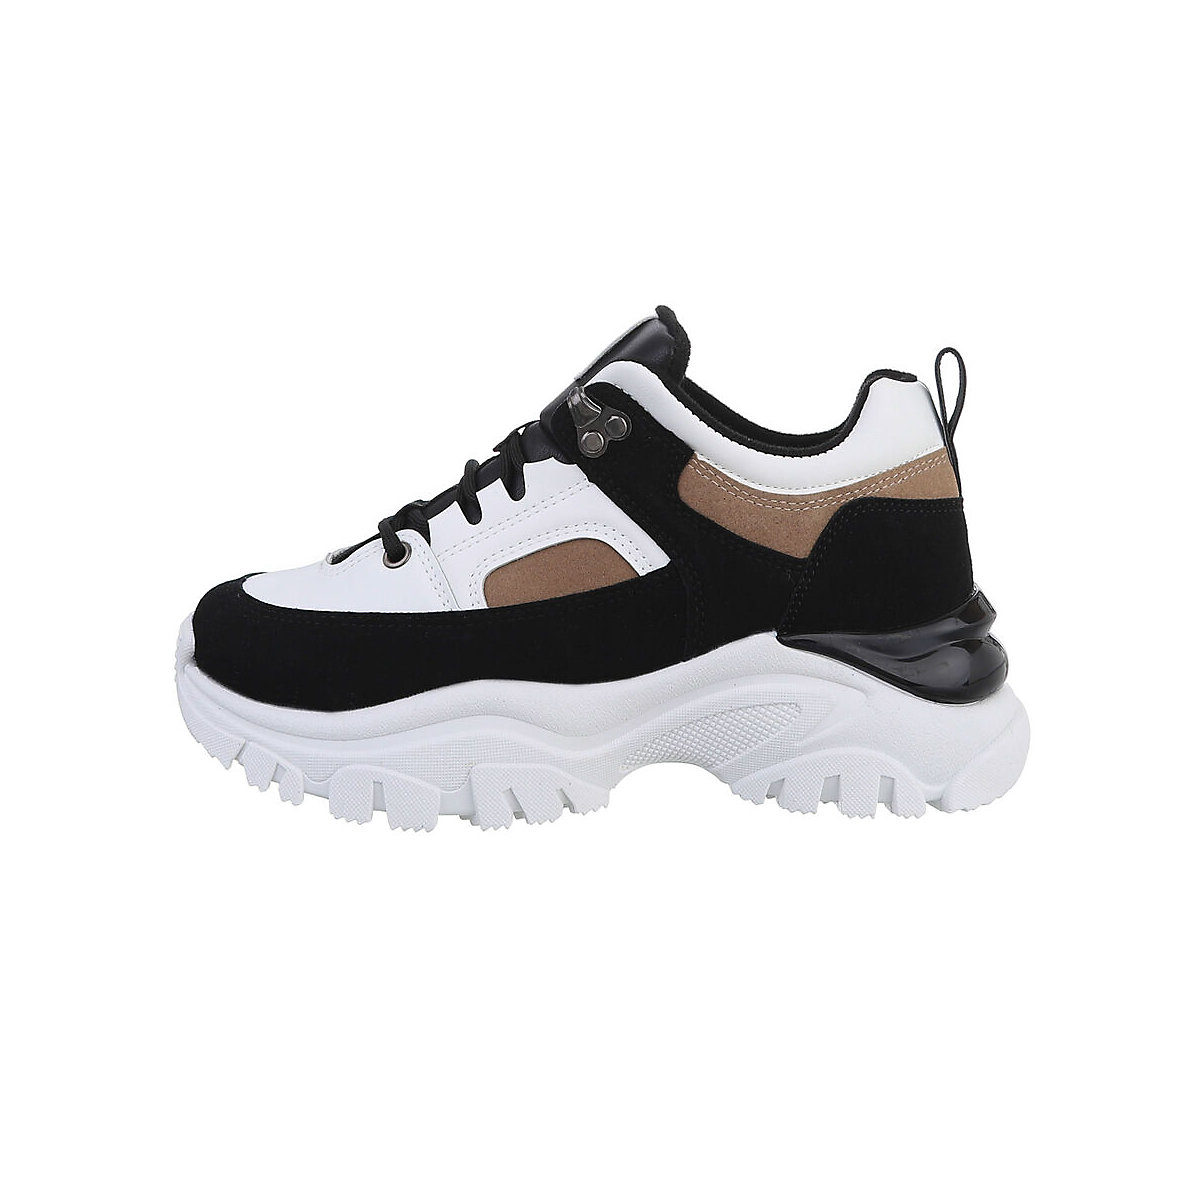 Ital-Design Sneakers Low Lochschnürung Keilabsatz/Wedge schwarz/weiß